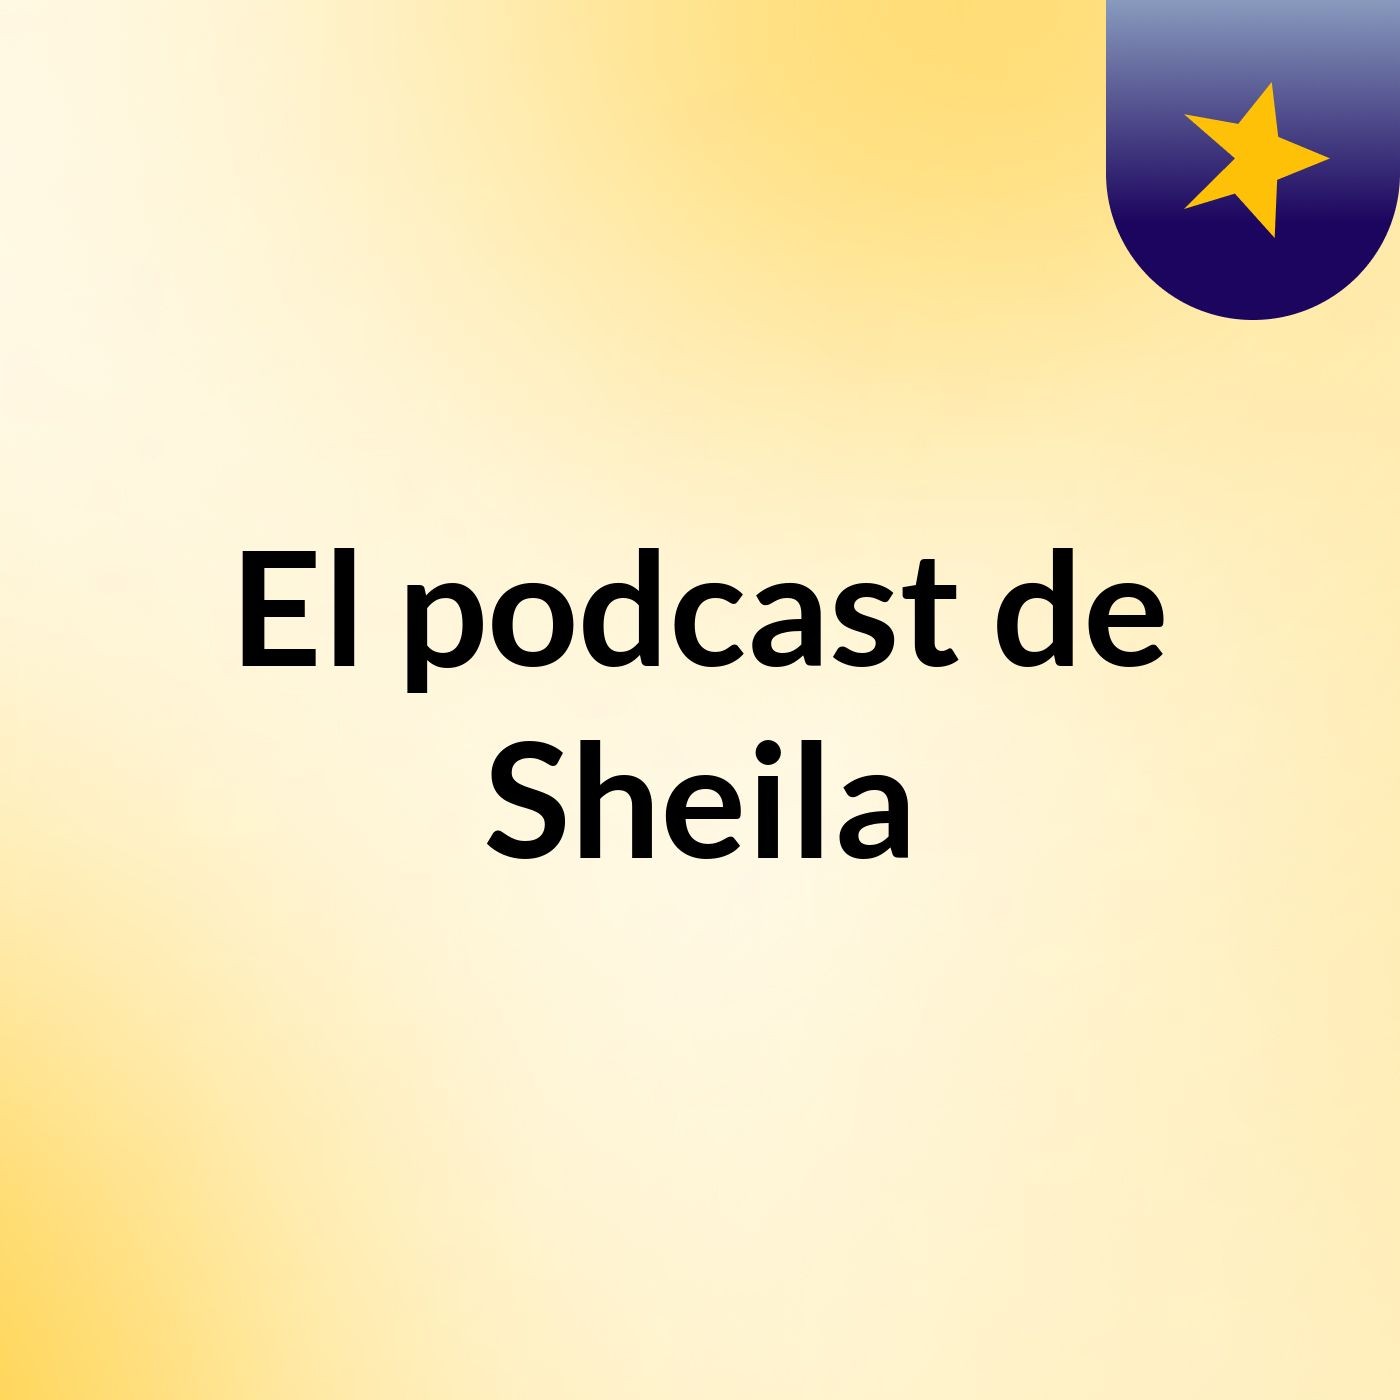 El podcast de Sheila